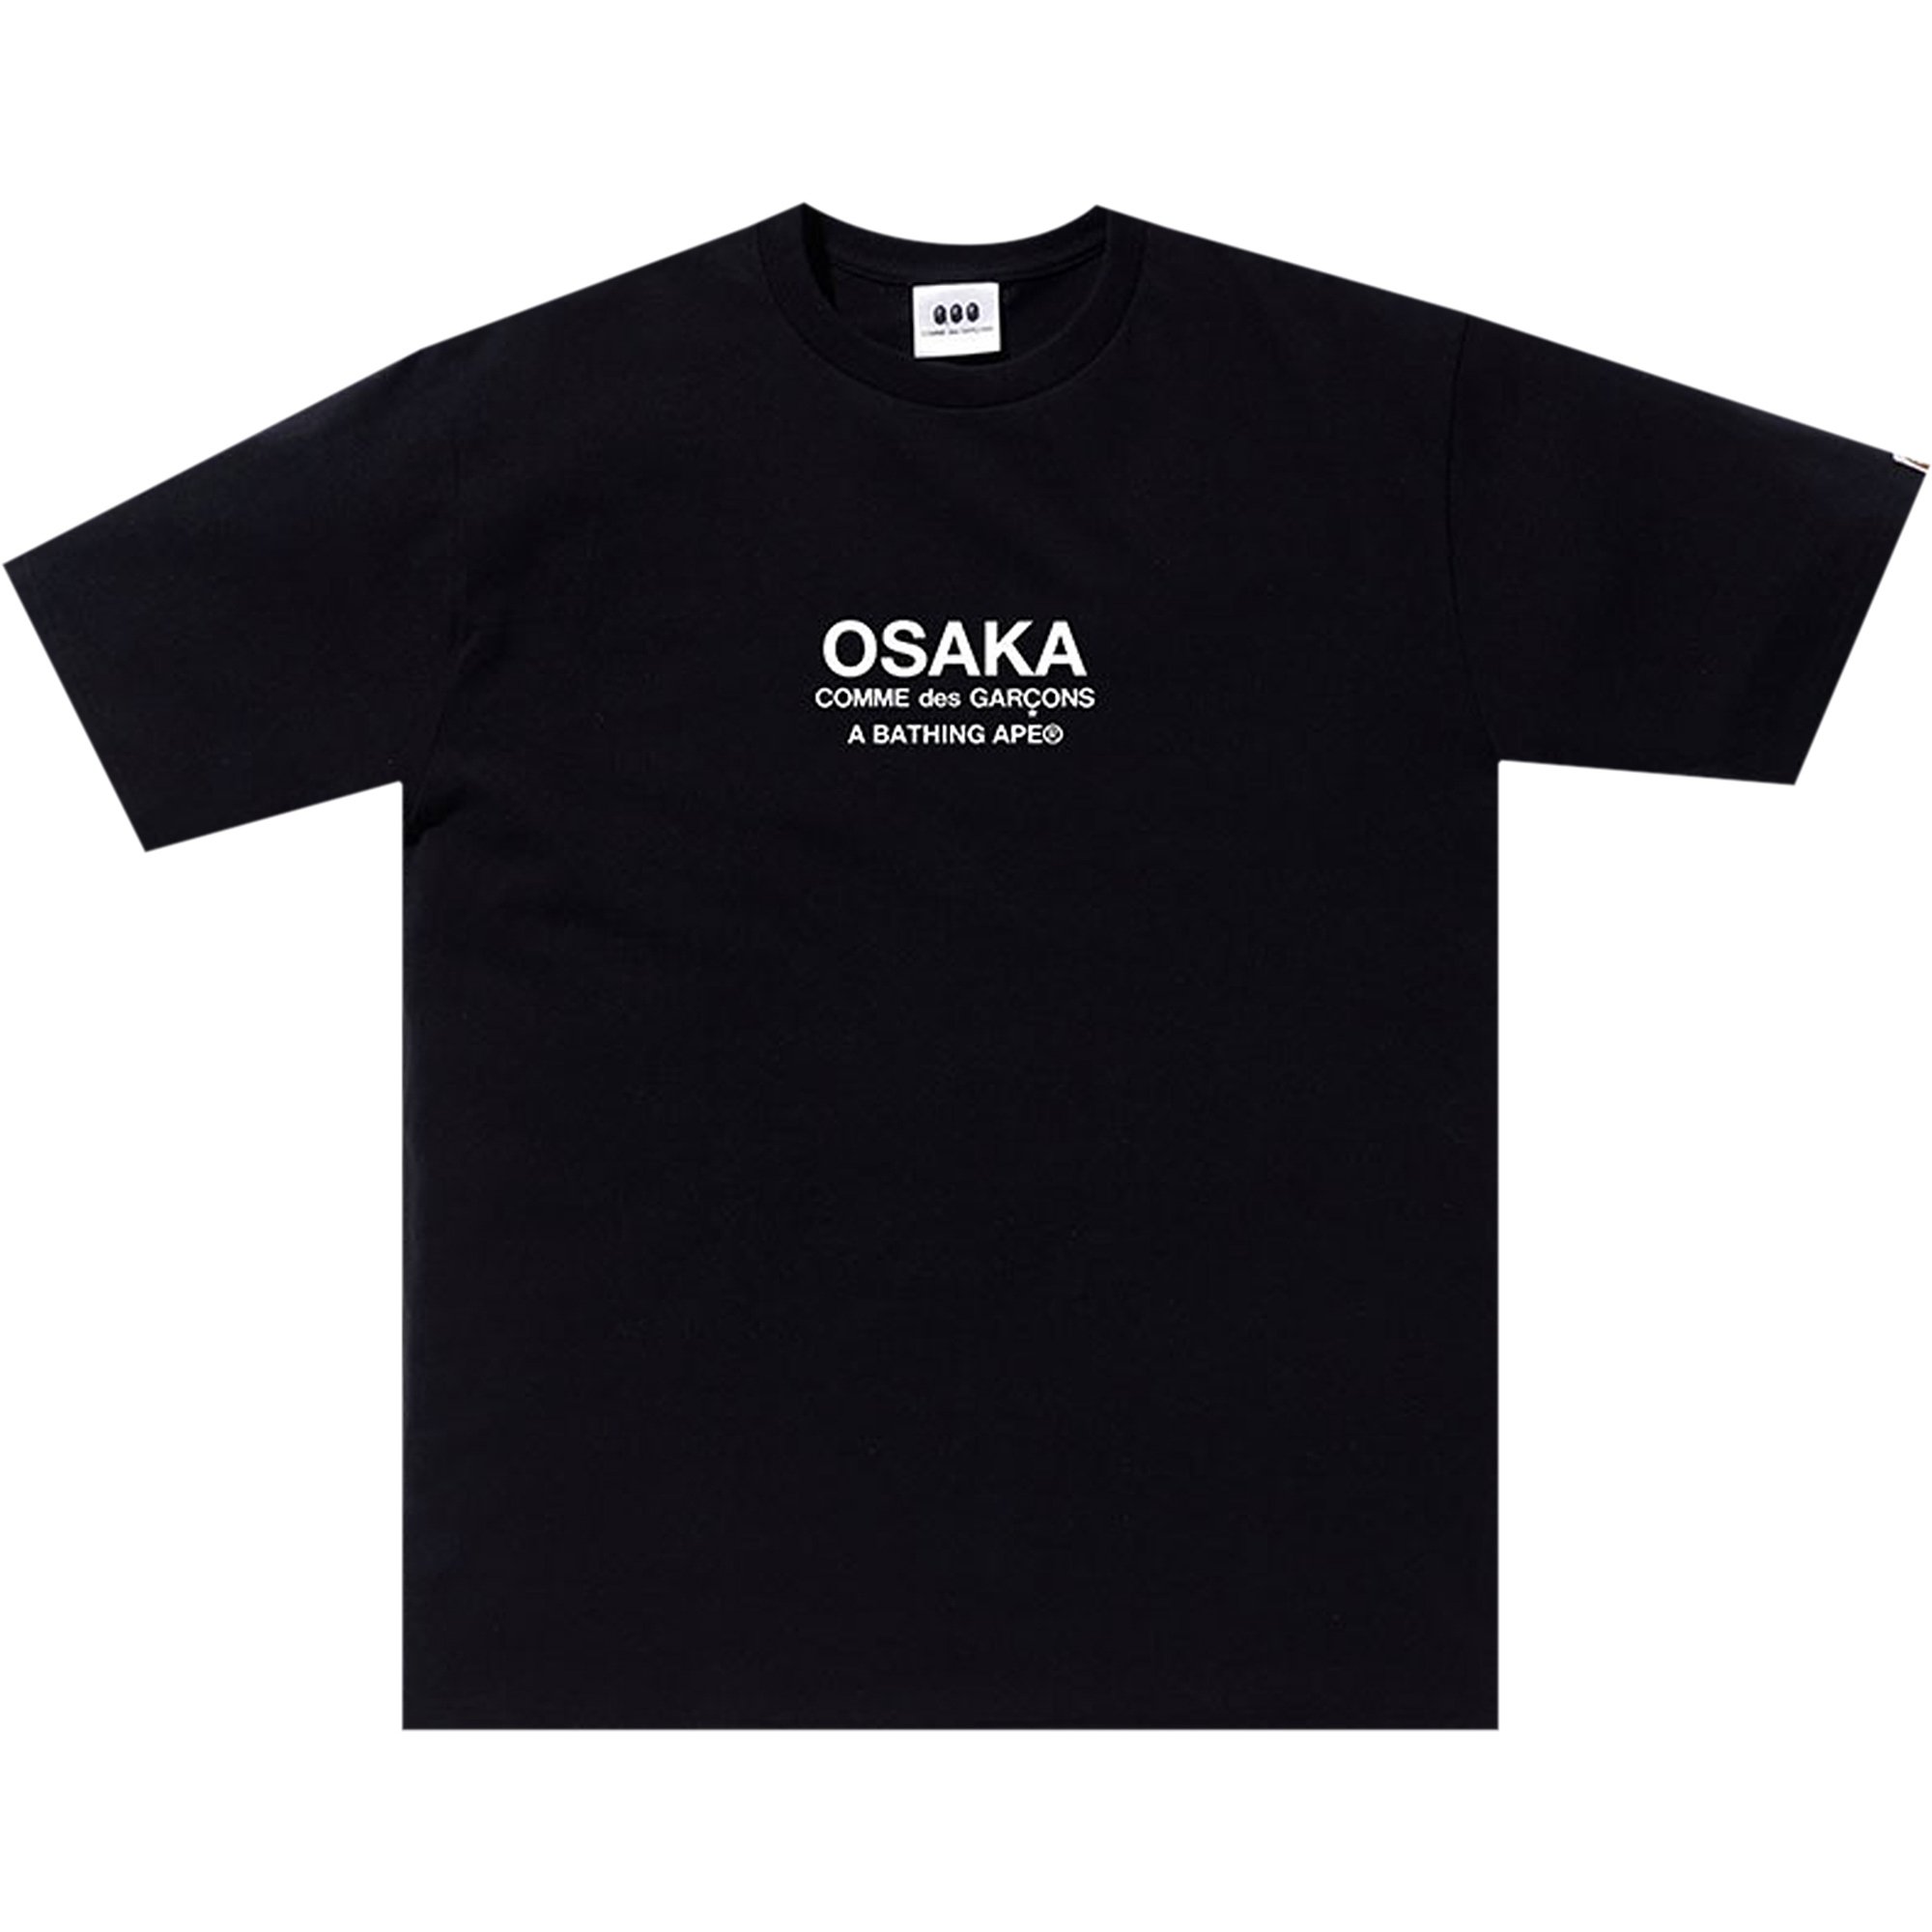 Buy BAPE x Comme des Garçons Osaka Tee #1 'Black' - 0039